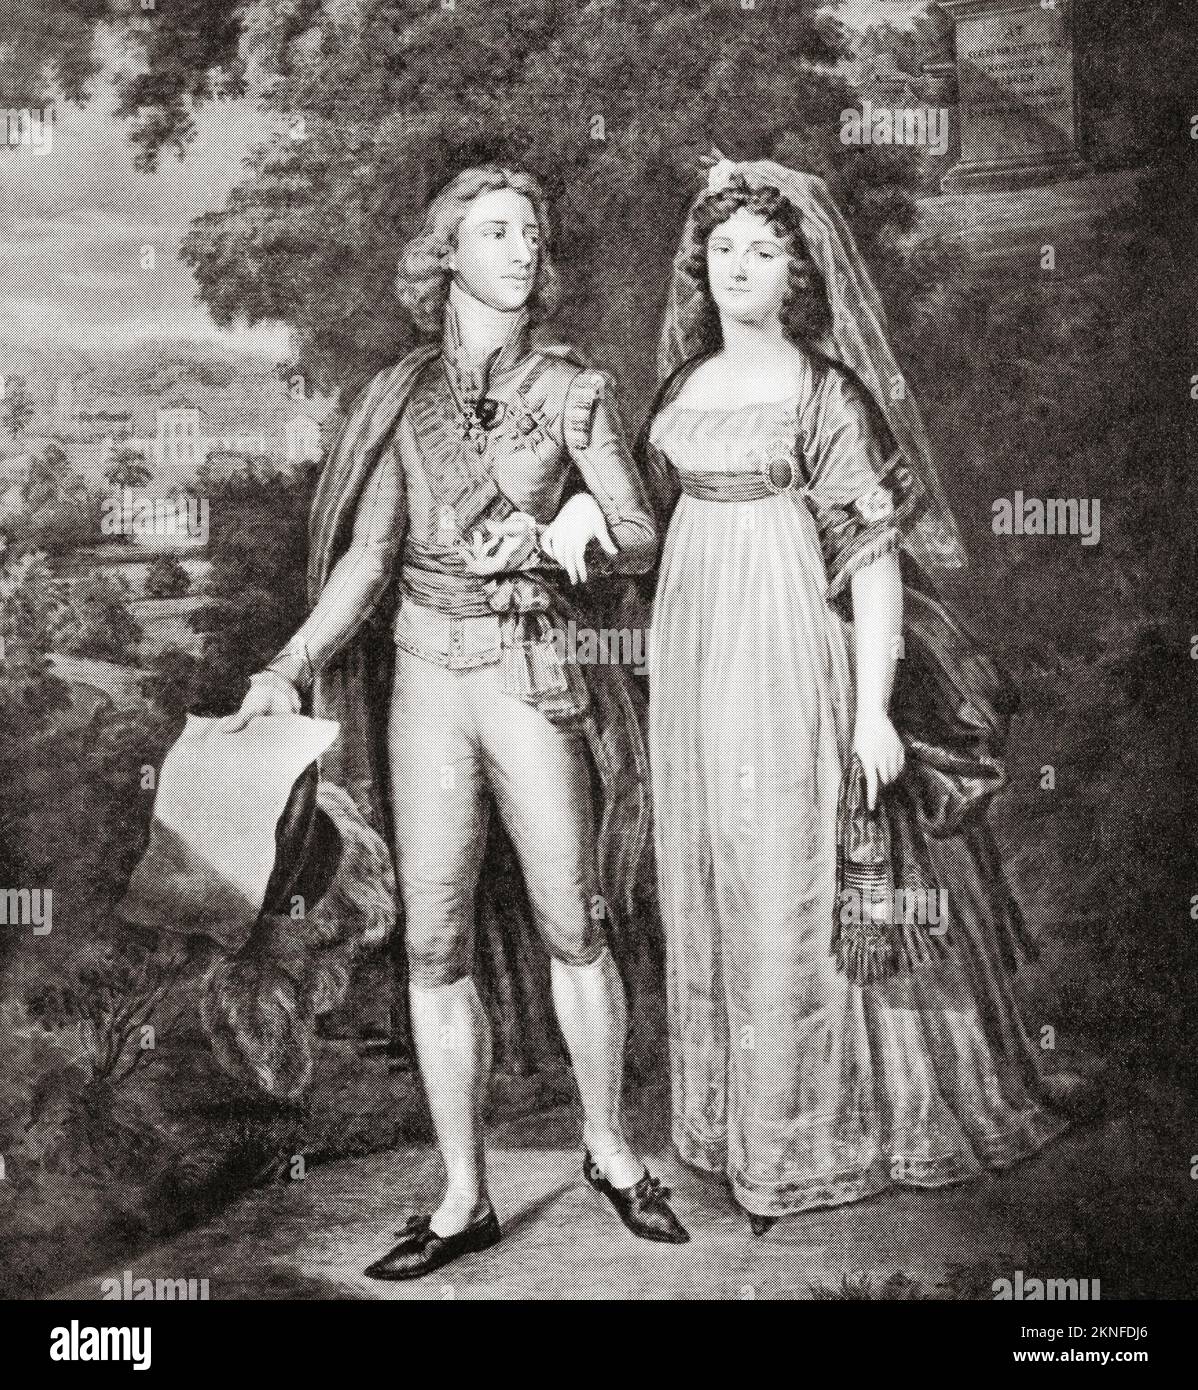 Gustav IV Adolf de Suède et sa femme Frederica de Baden. Gustav IV Adolf ou Gustav IV Adolph, 1778 – 1837. Roi de Suède. Friederike 'Frederica' Dorothea Wilhelmina de Baden, 1781 - 1826. Reine consort de Suède. Banque D'Images